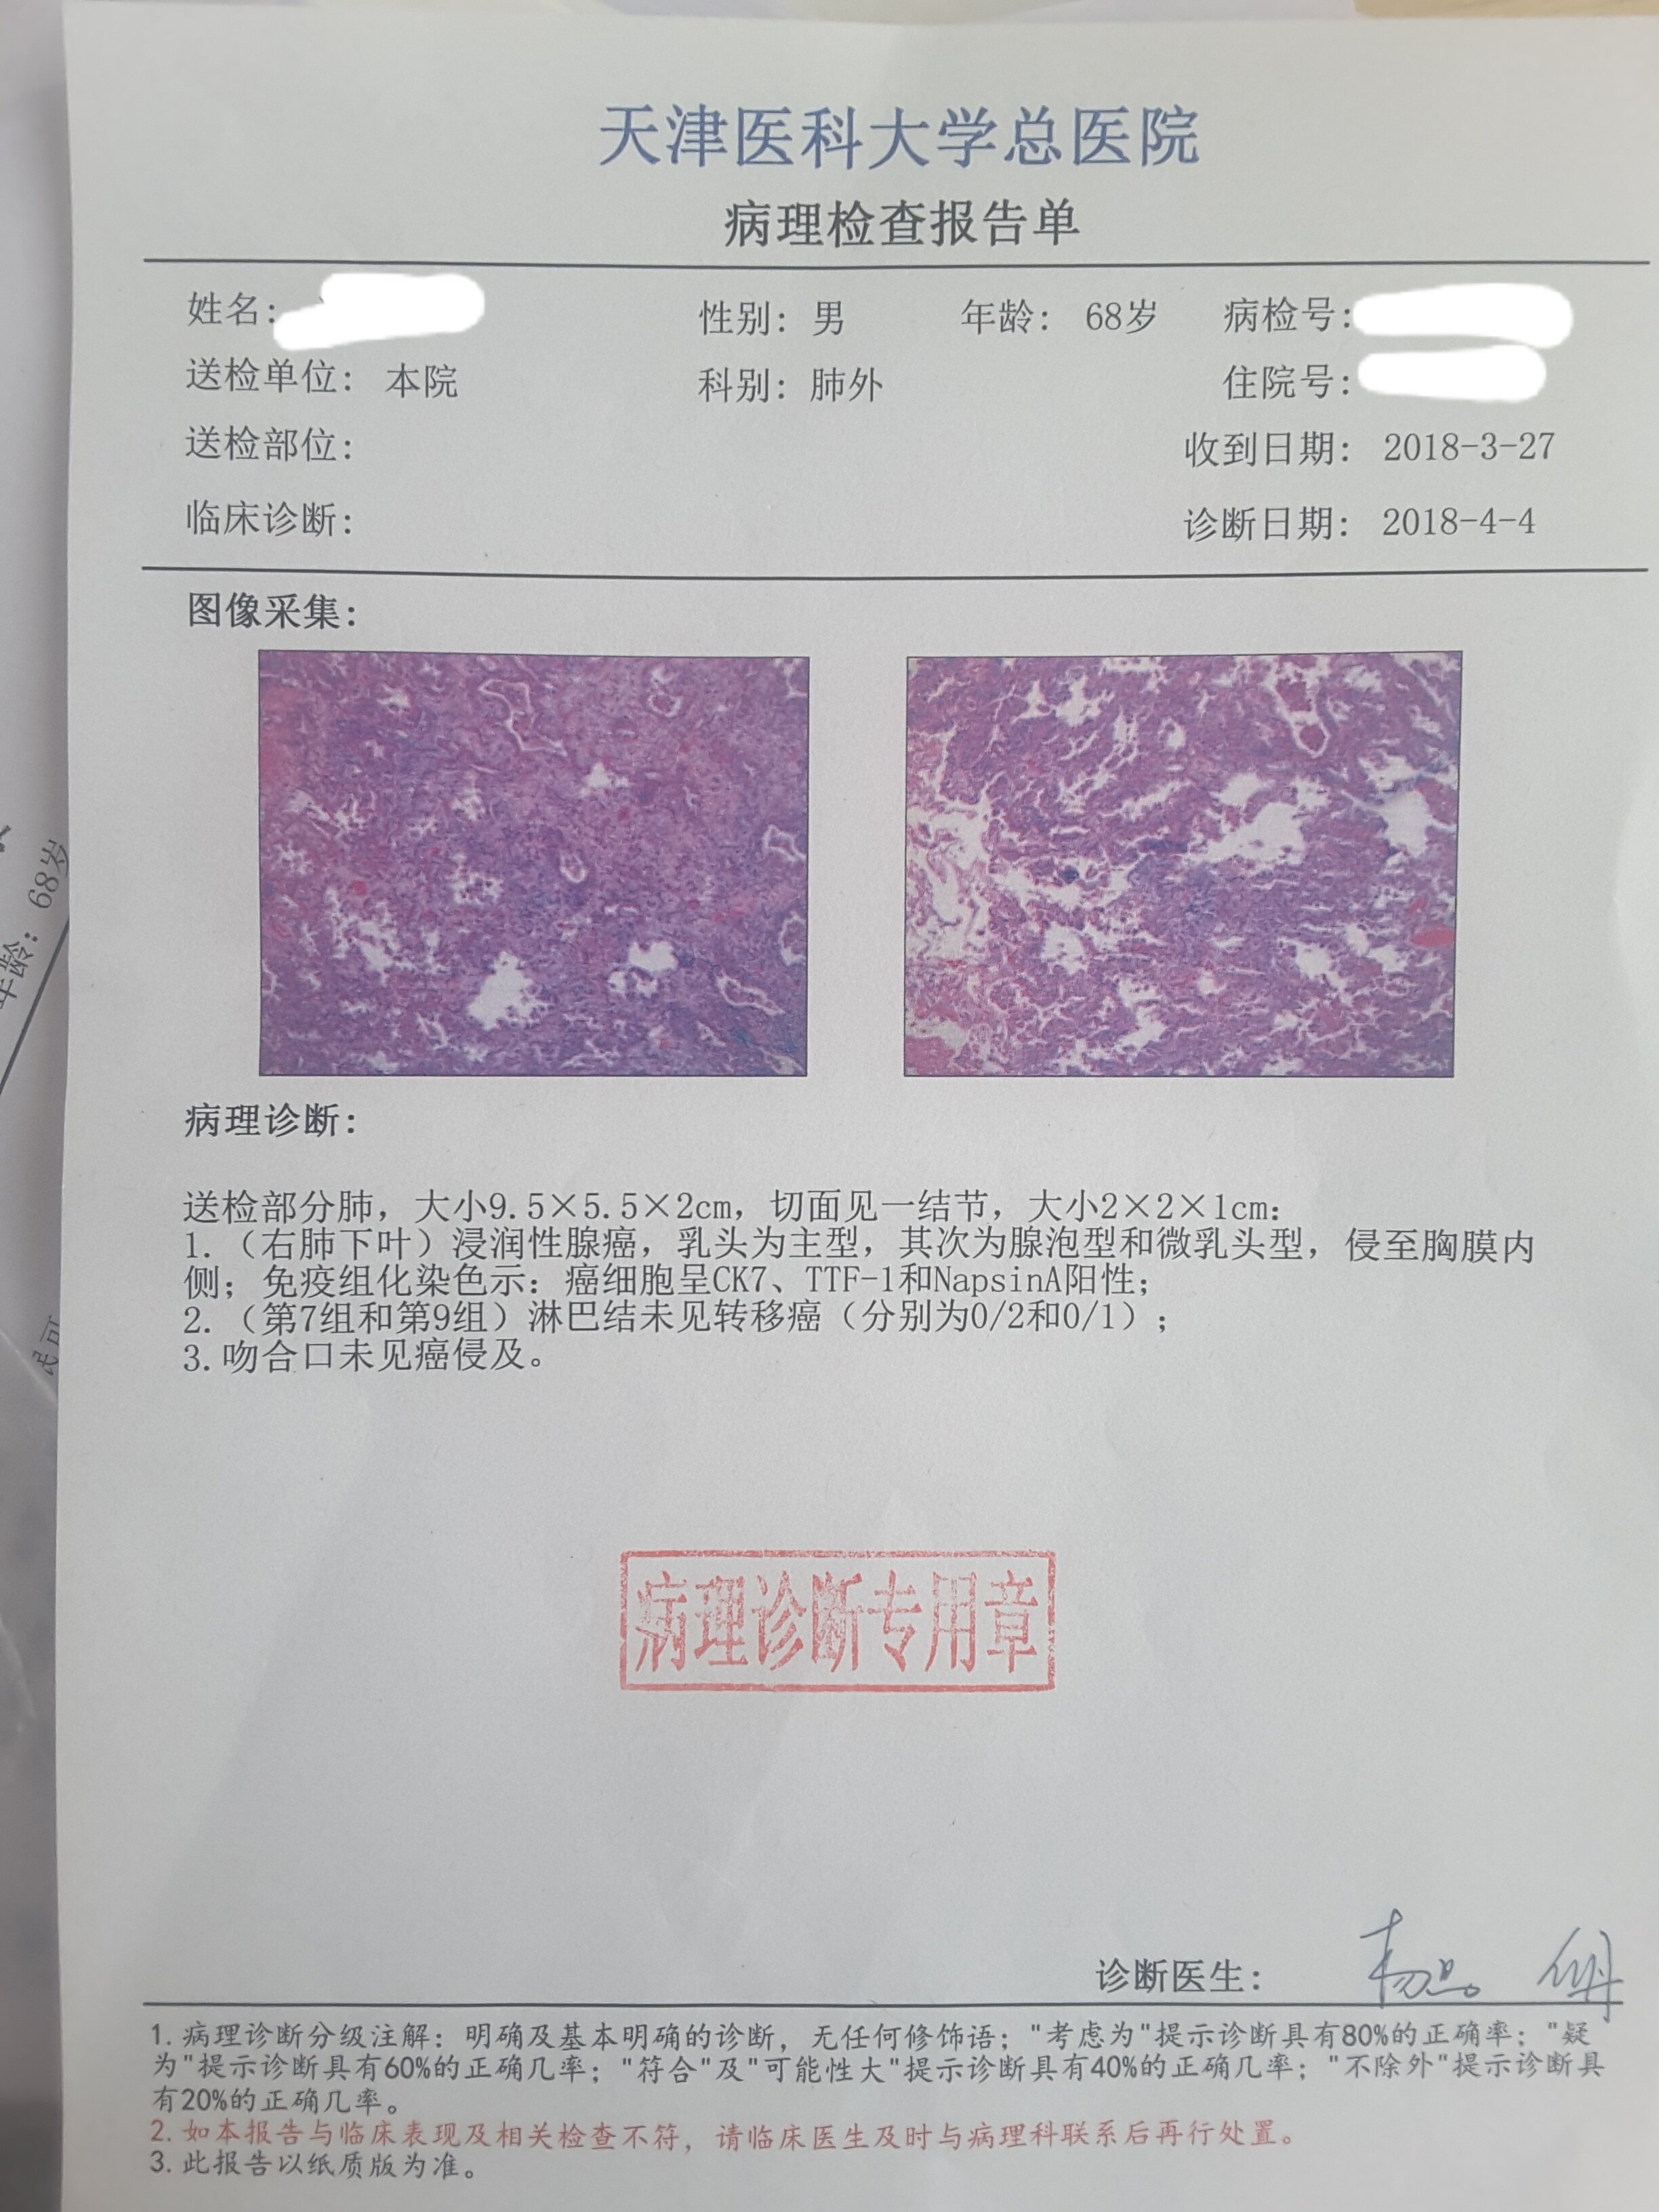 刘懿博士说肺癌二三七九发现肺结节同时有肝炎能做手术么